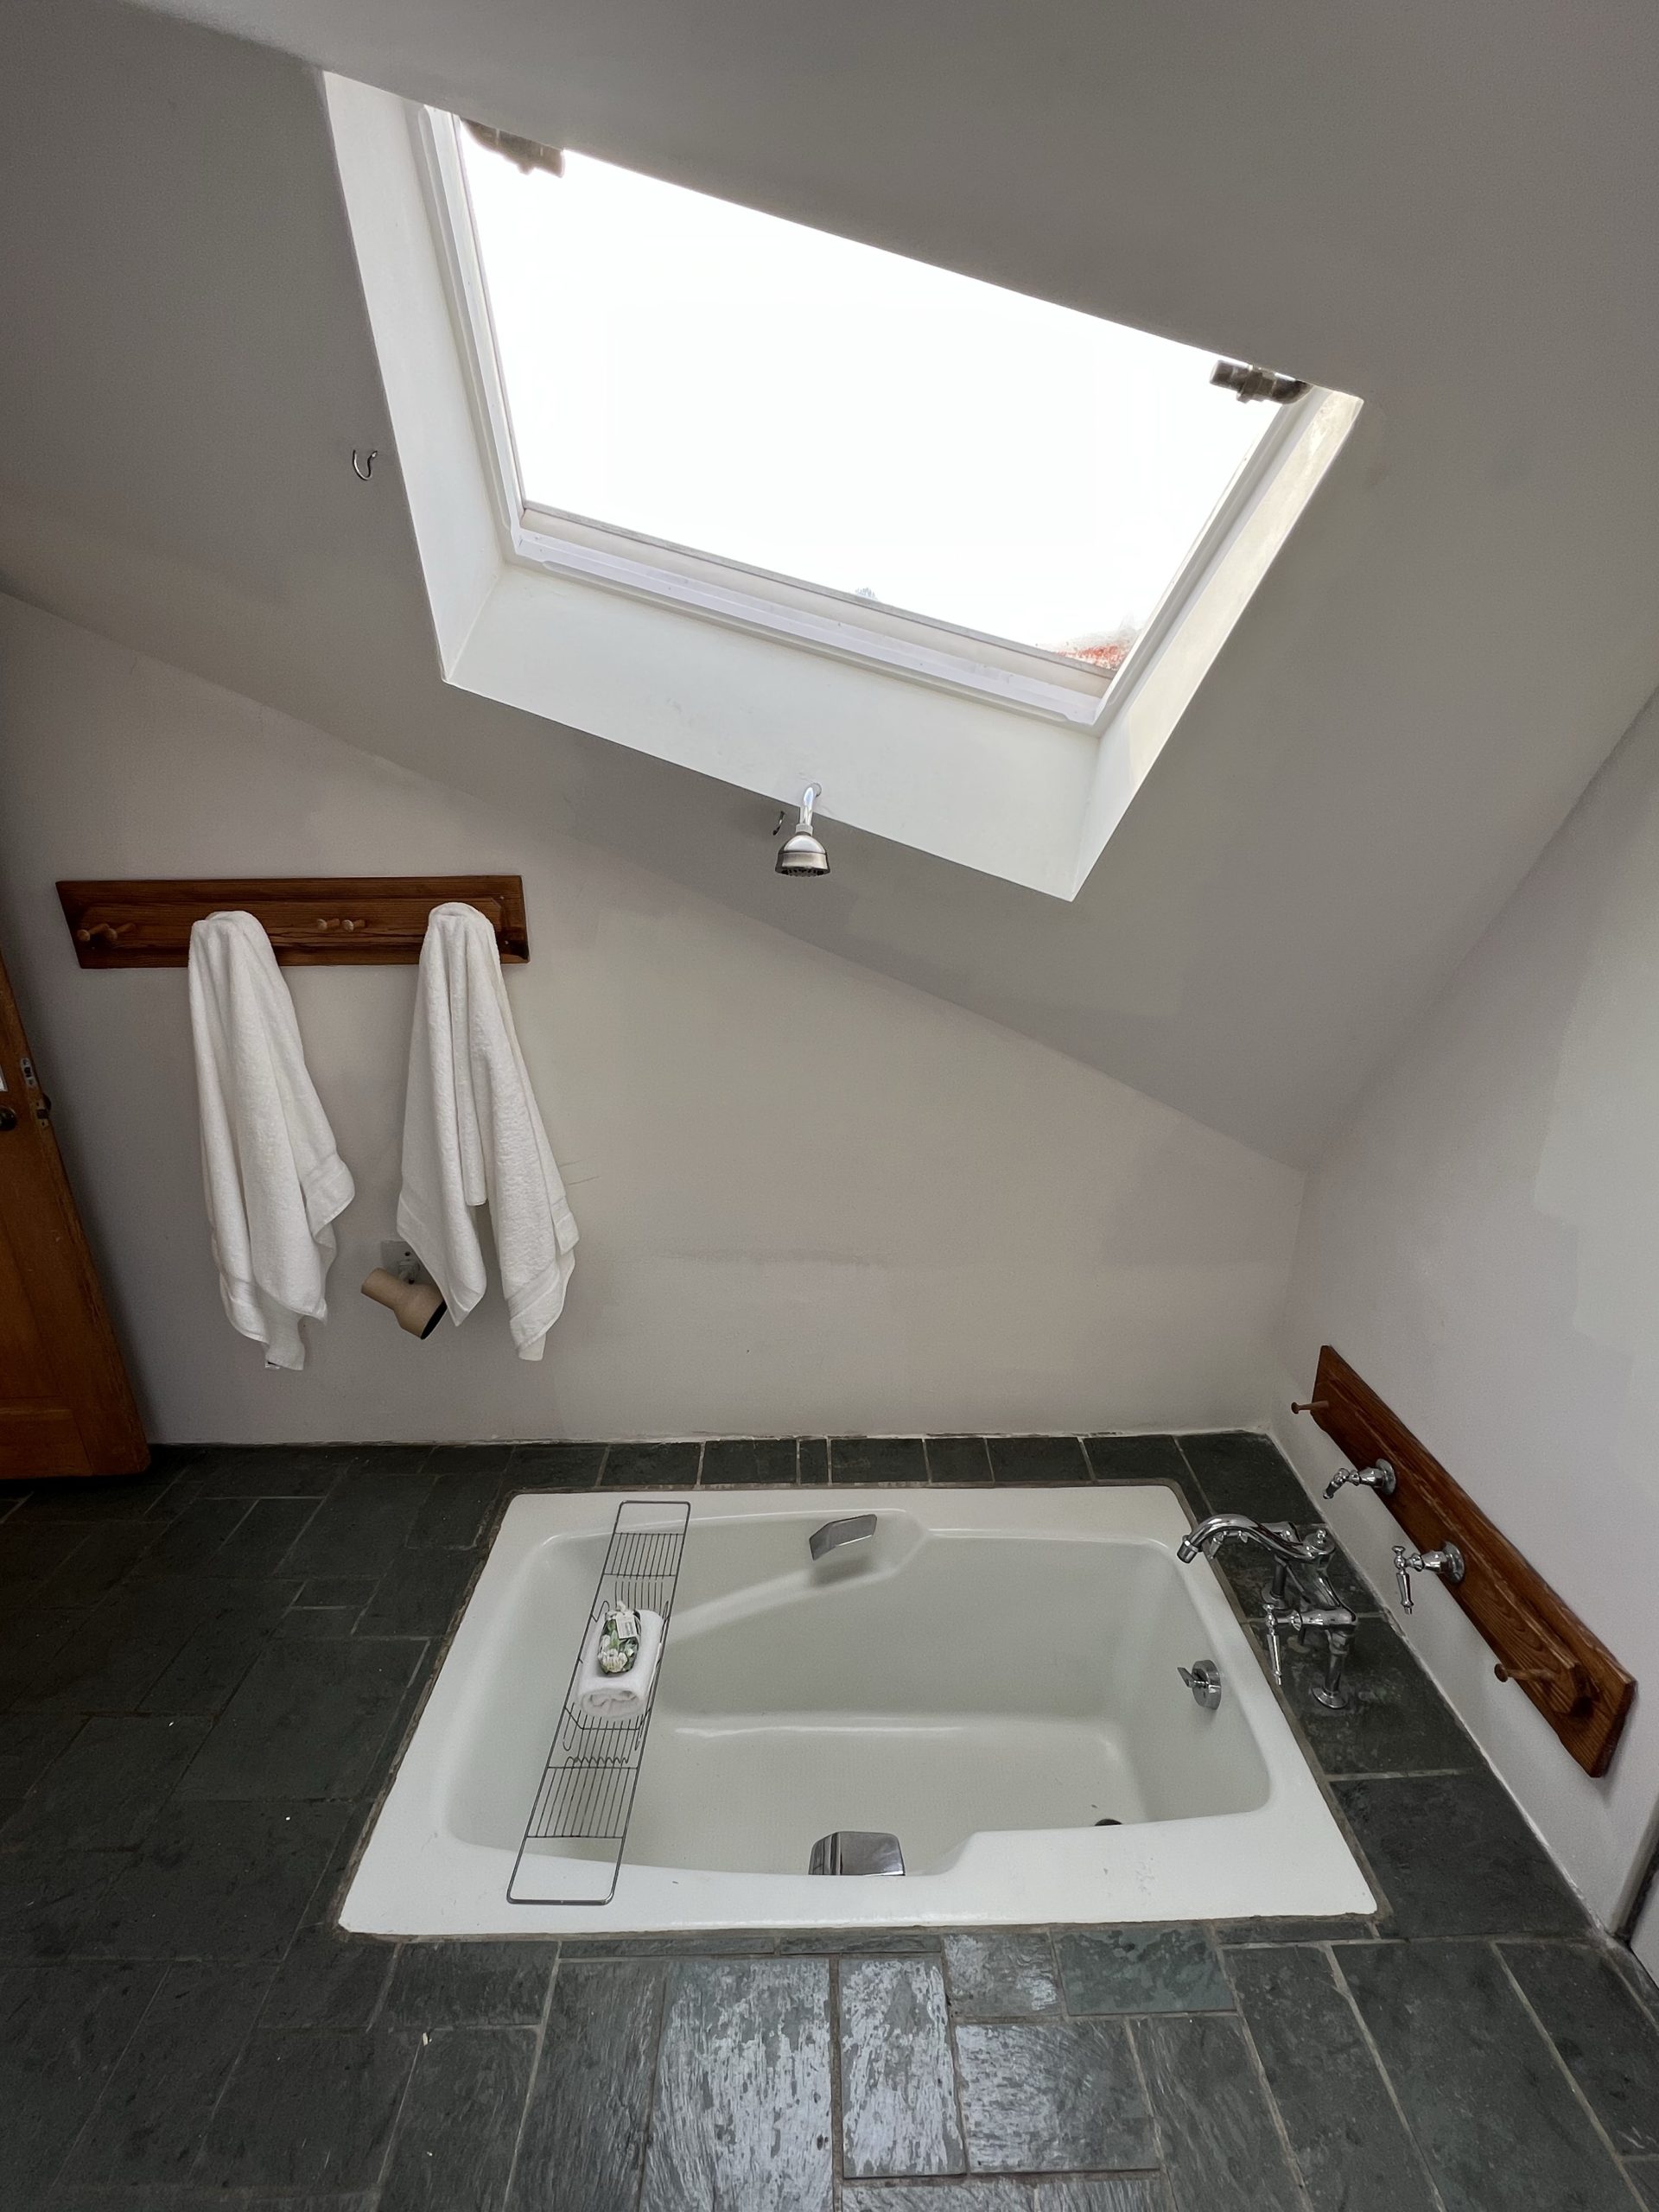 Bathroom tub built into the floor with a skylight above it. 